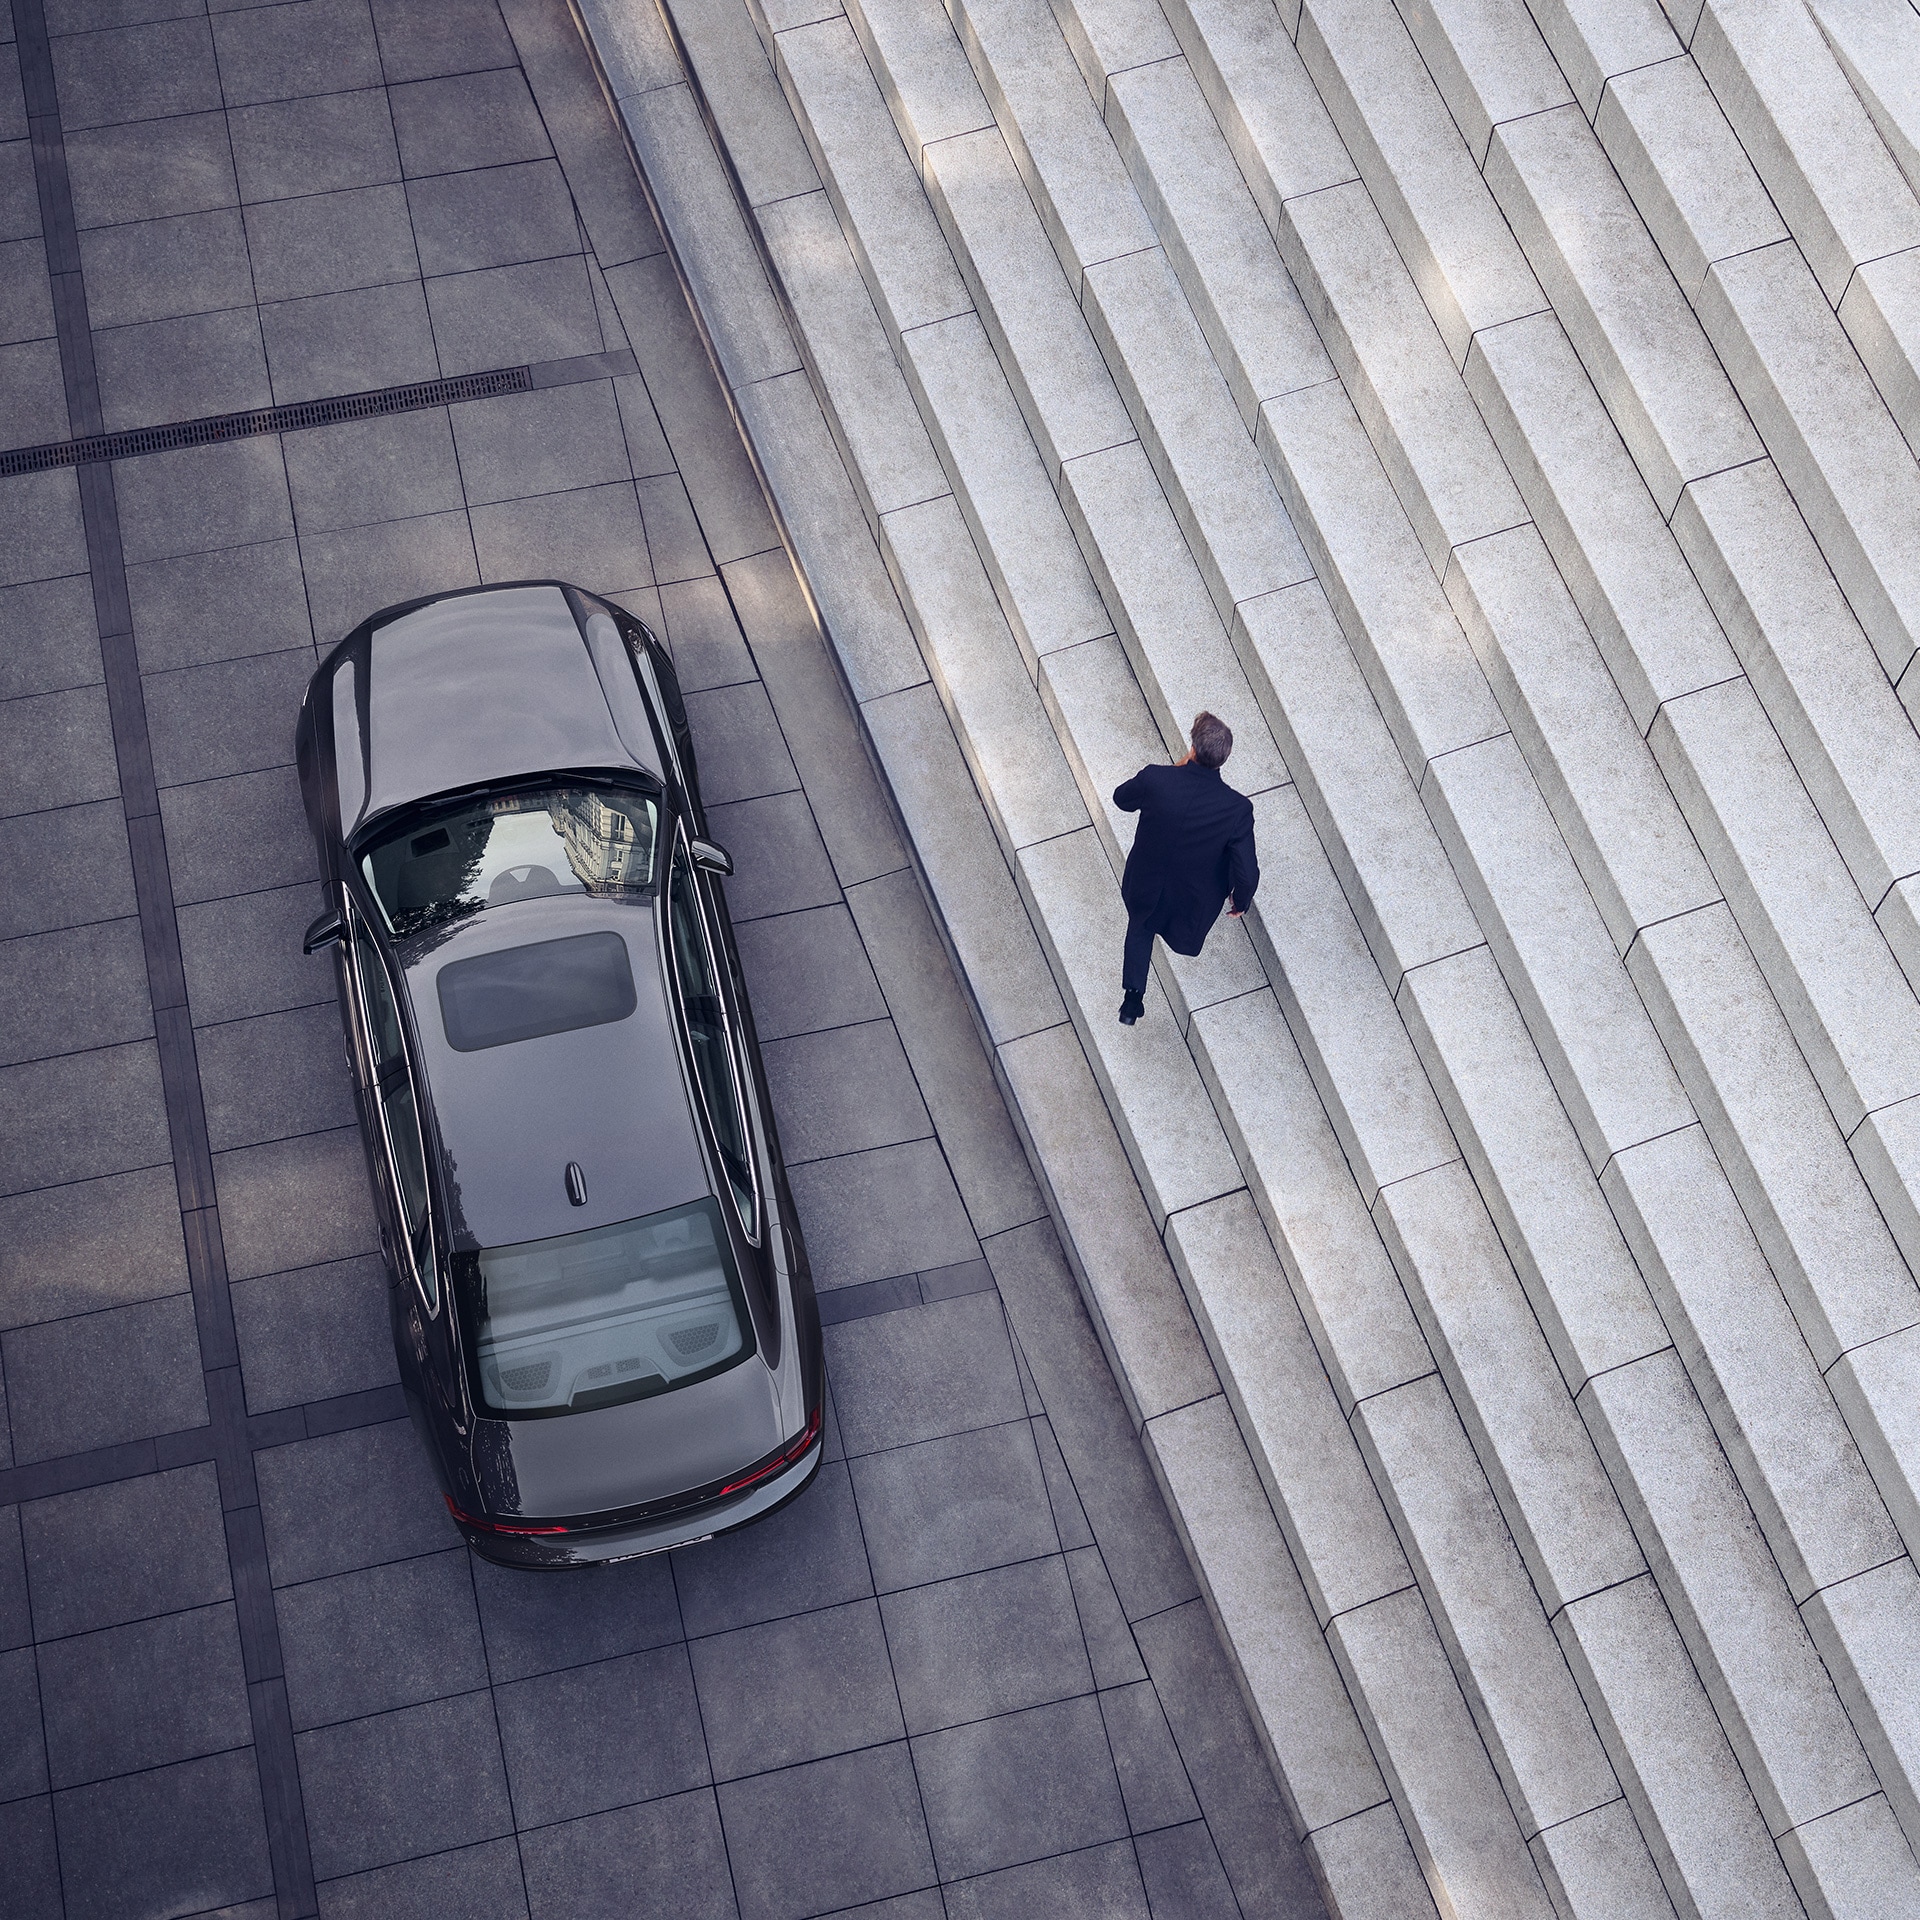 Un Volvo S90 aparcado frente a unas escaleras; un hombre se aleja del coche.